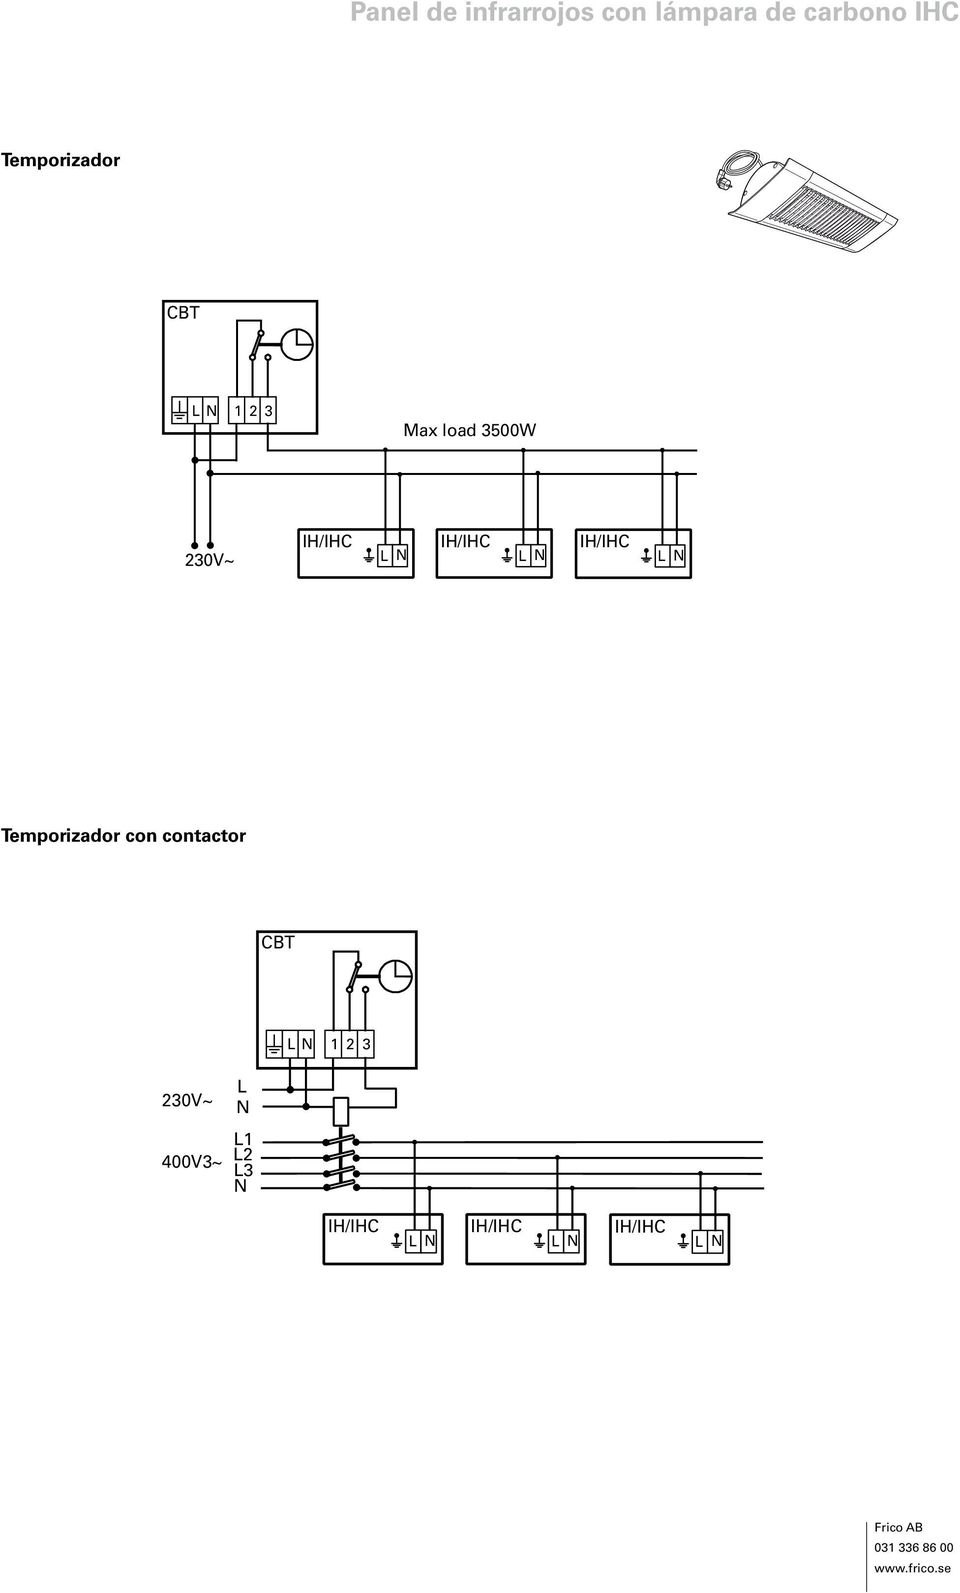 contactor CBT LN 1 2 3 230V~ 400V3~ L